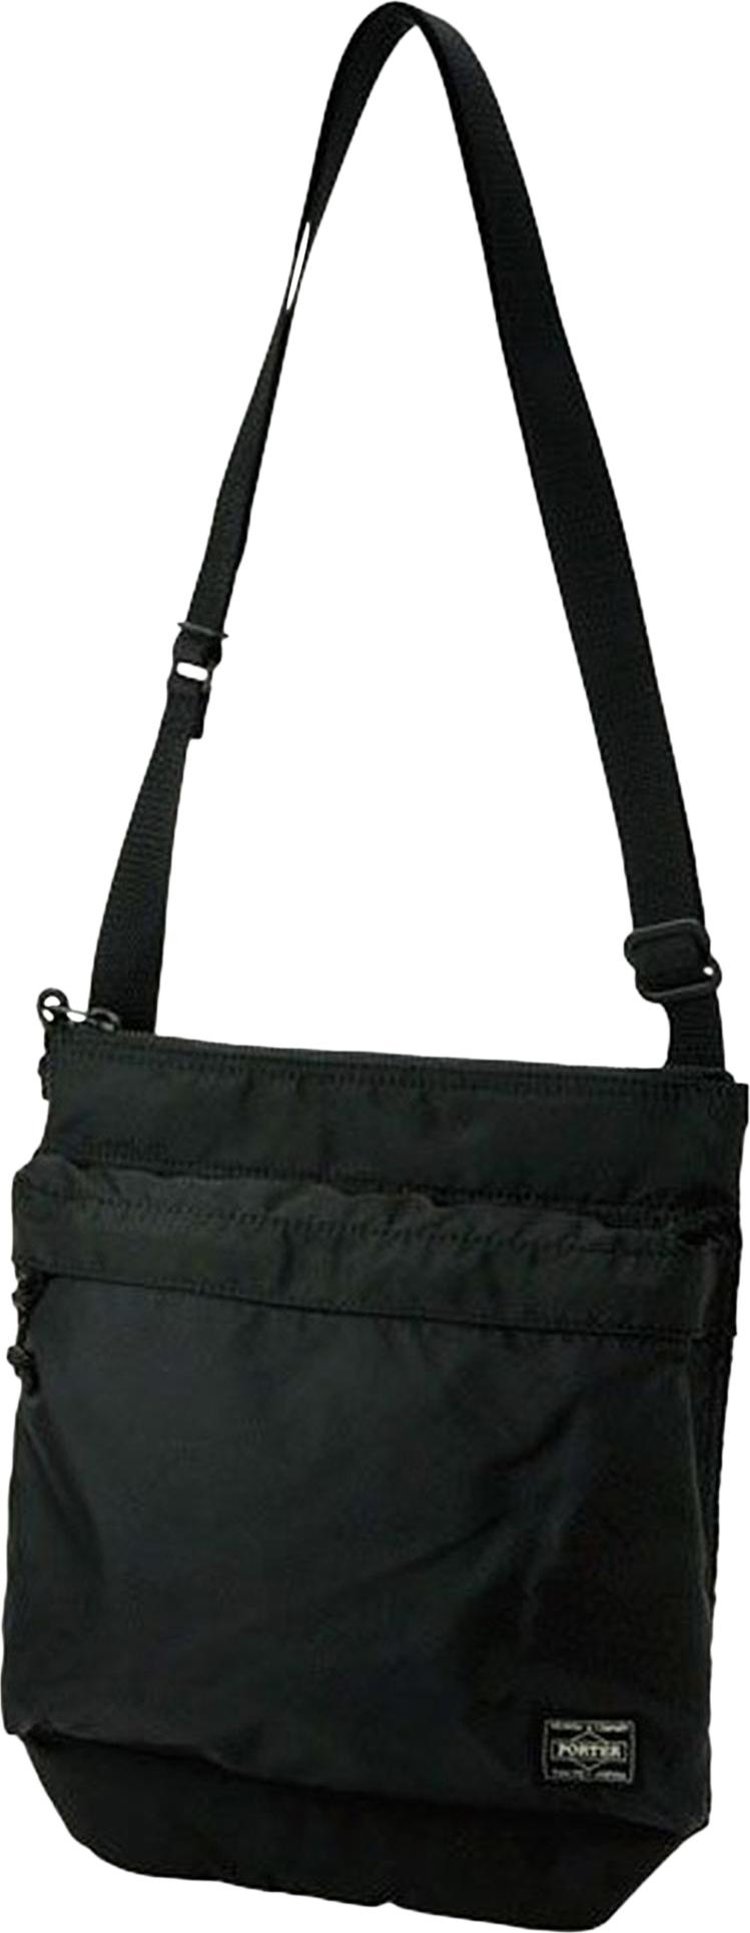 Porter-Yoshida & Co. Force Shoulder Bag 'Black'